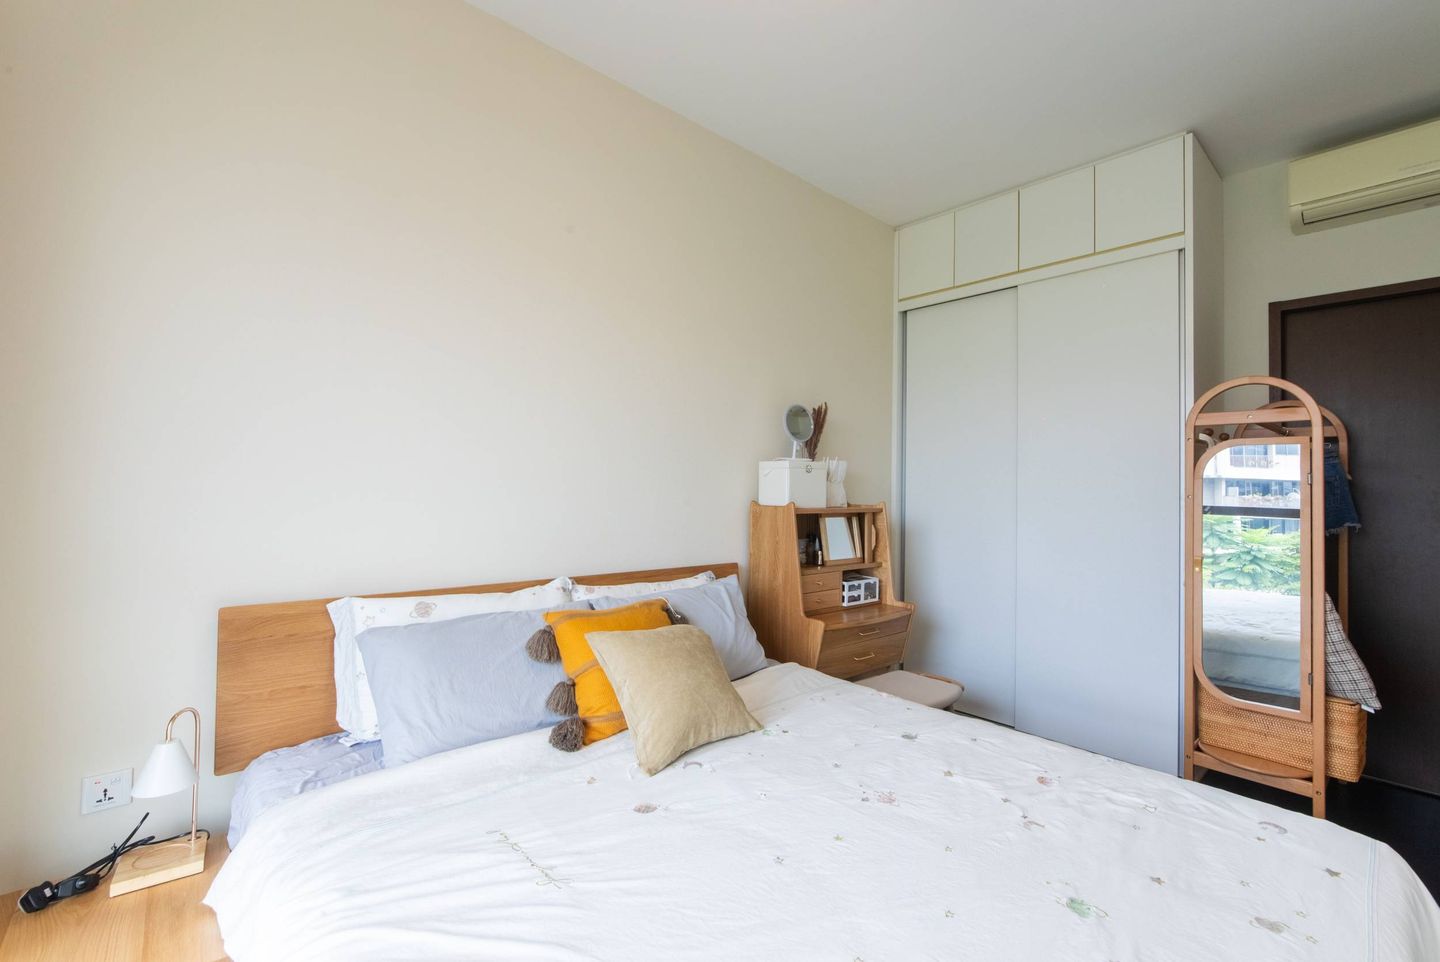 Bedroom Design With Dark Wooden Flooring - Livspace